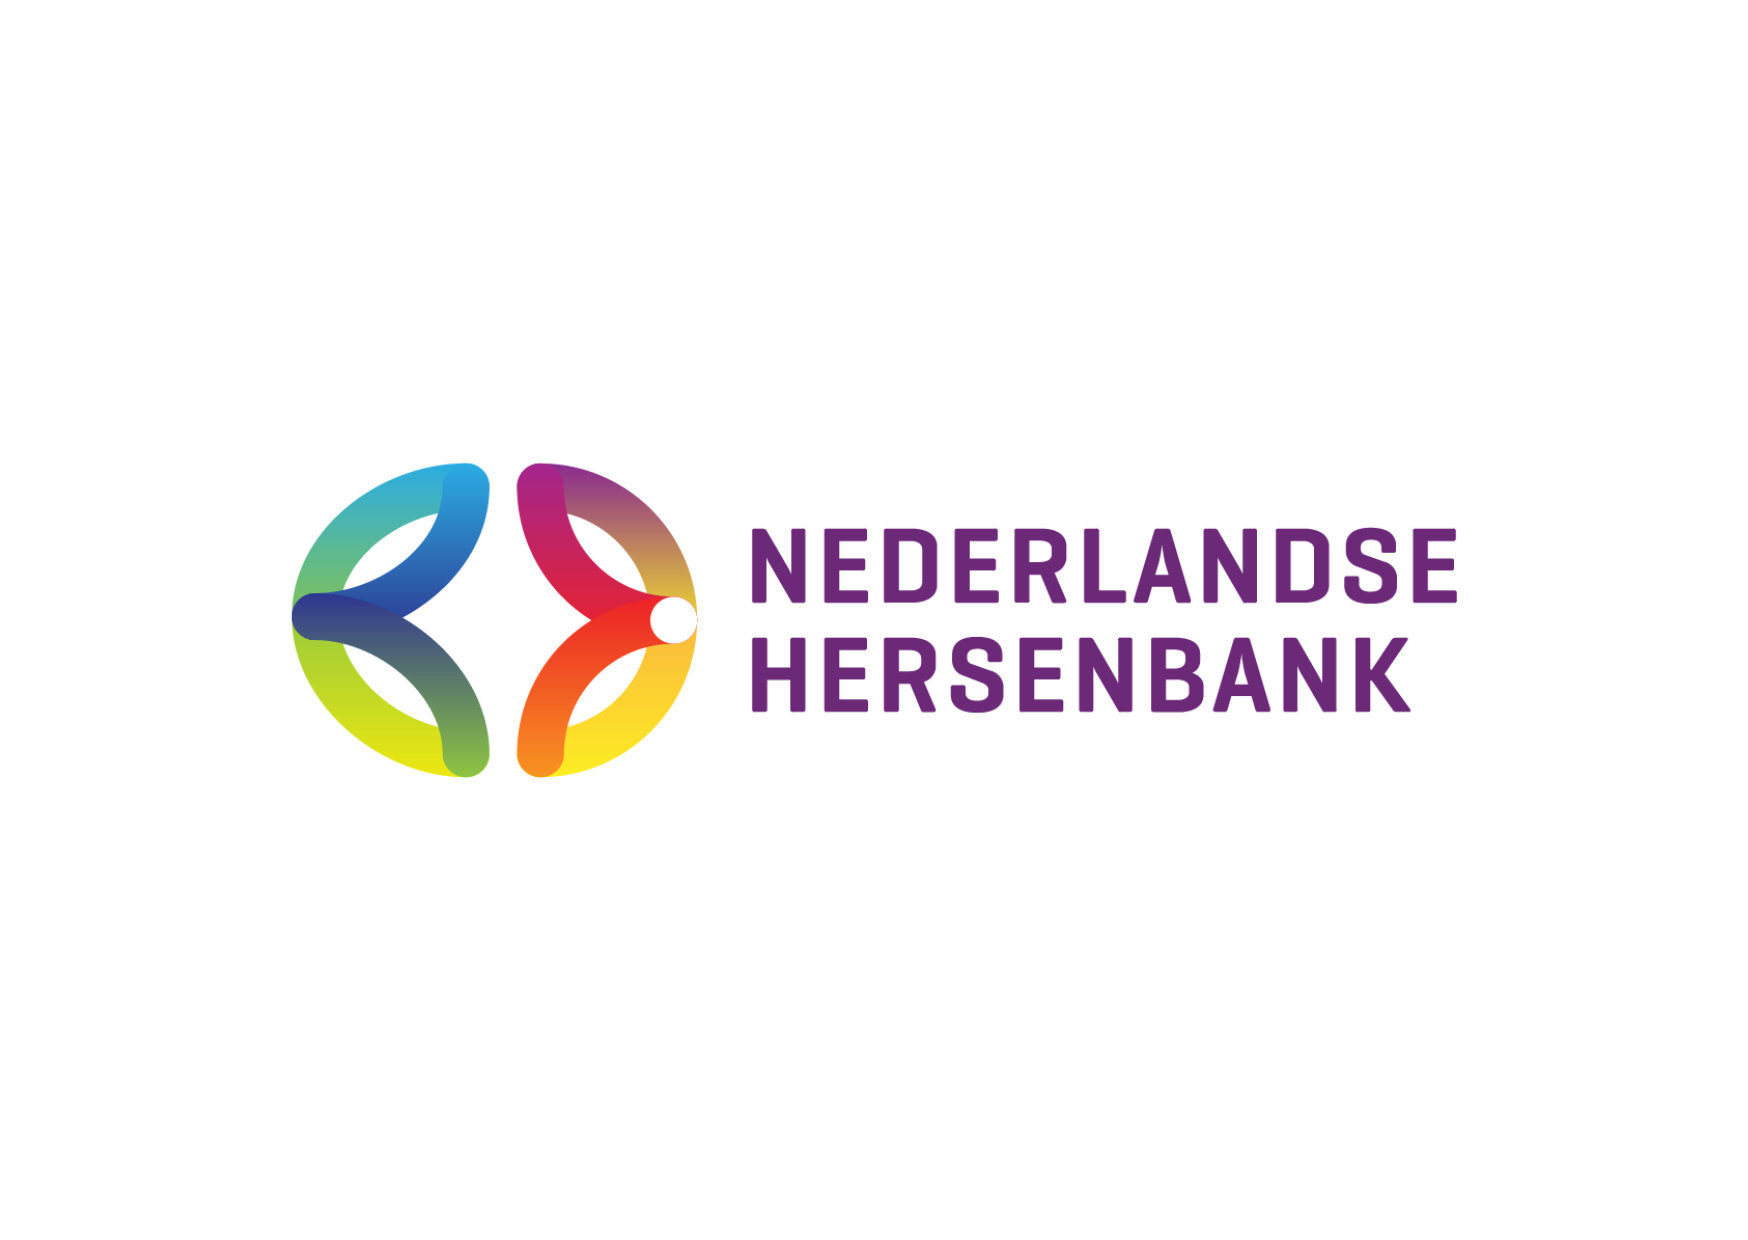 De Nederlandse Hersenbank